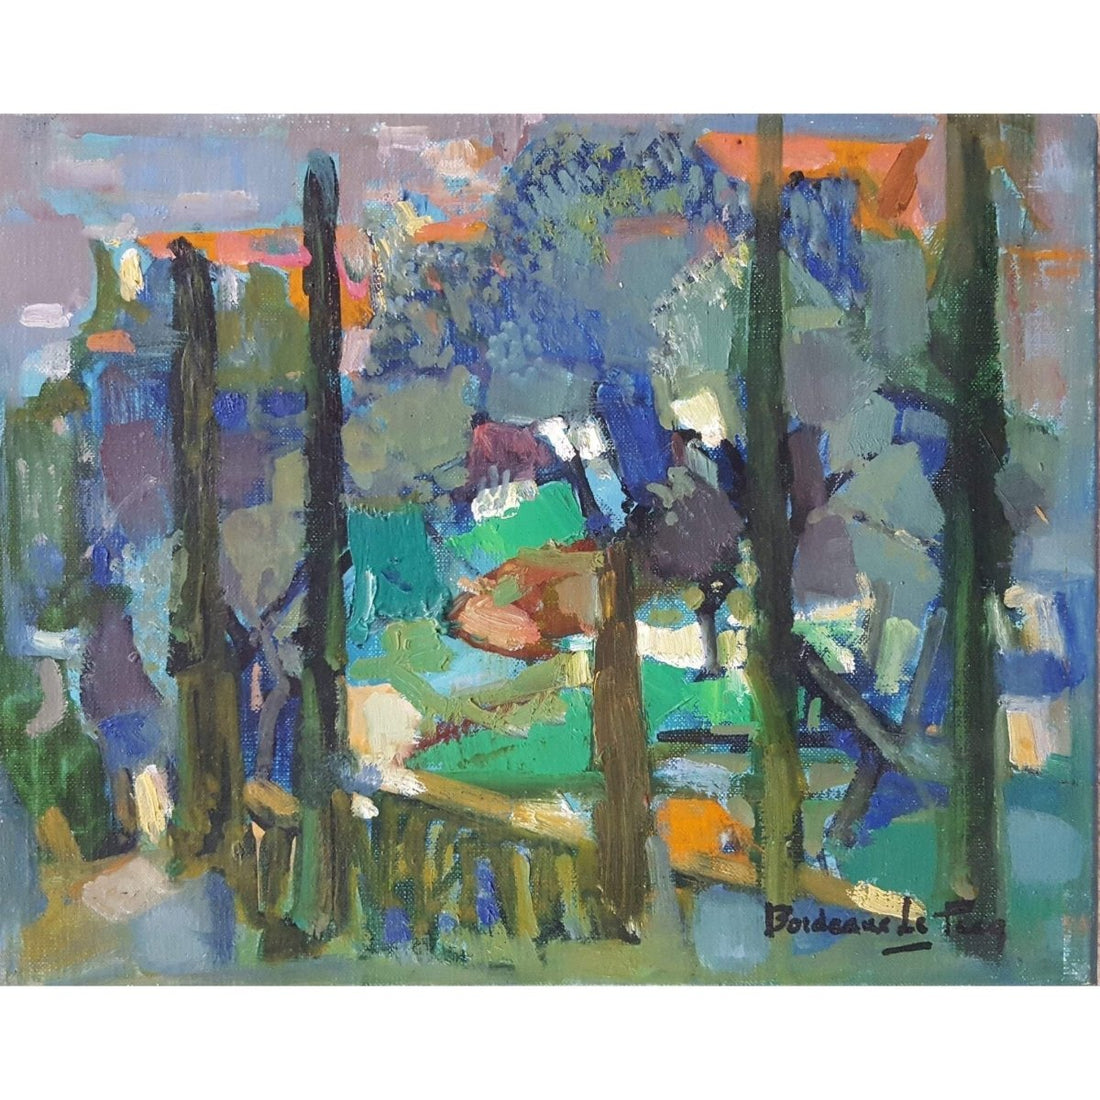 Andrée Bordeaux-Le Pecq – Landscape in Grasse – Circa 1960 - Winckelmann Gallery